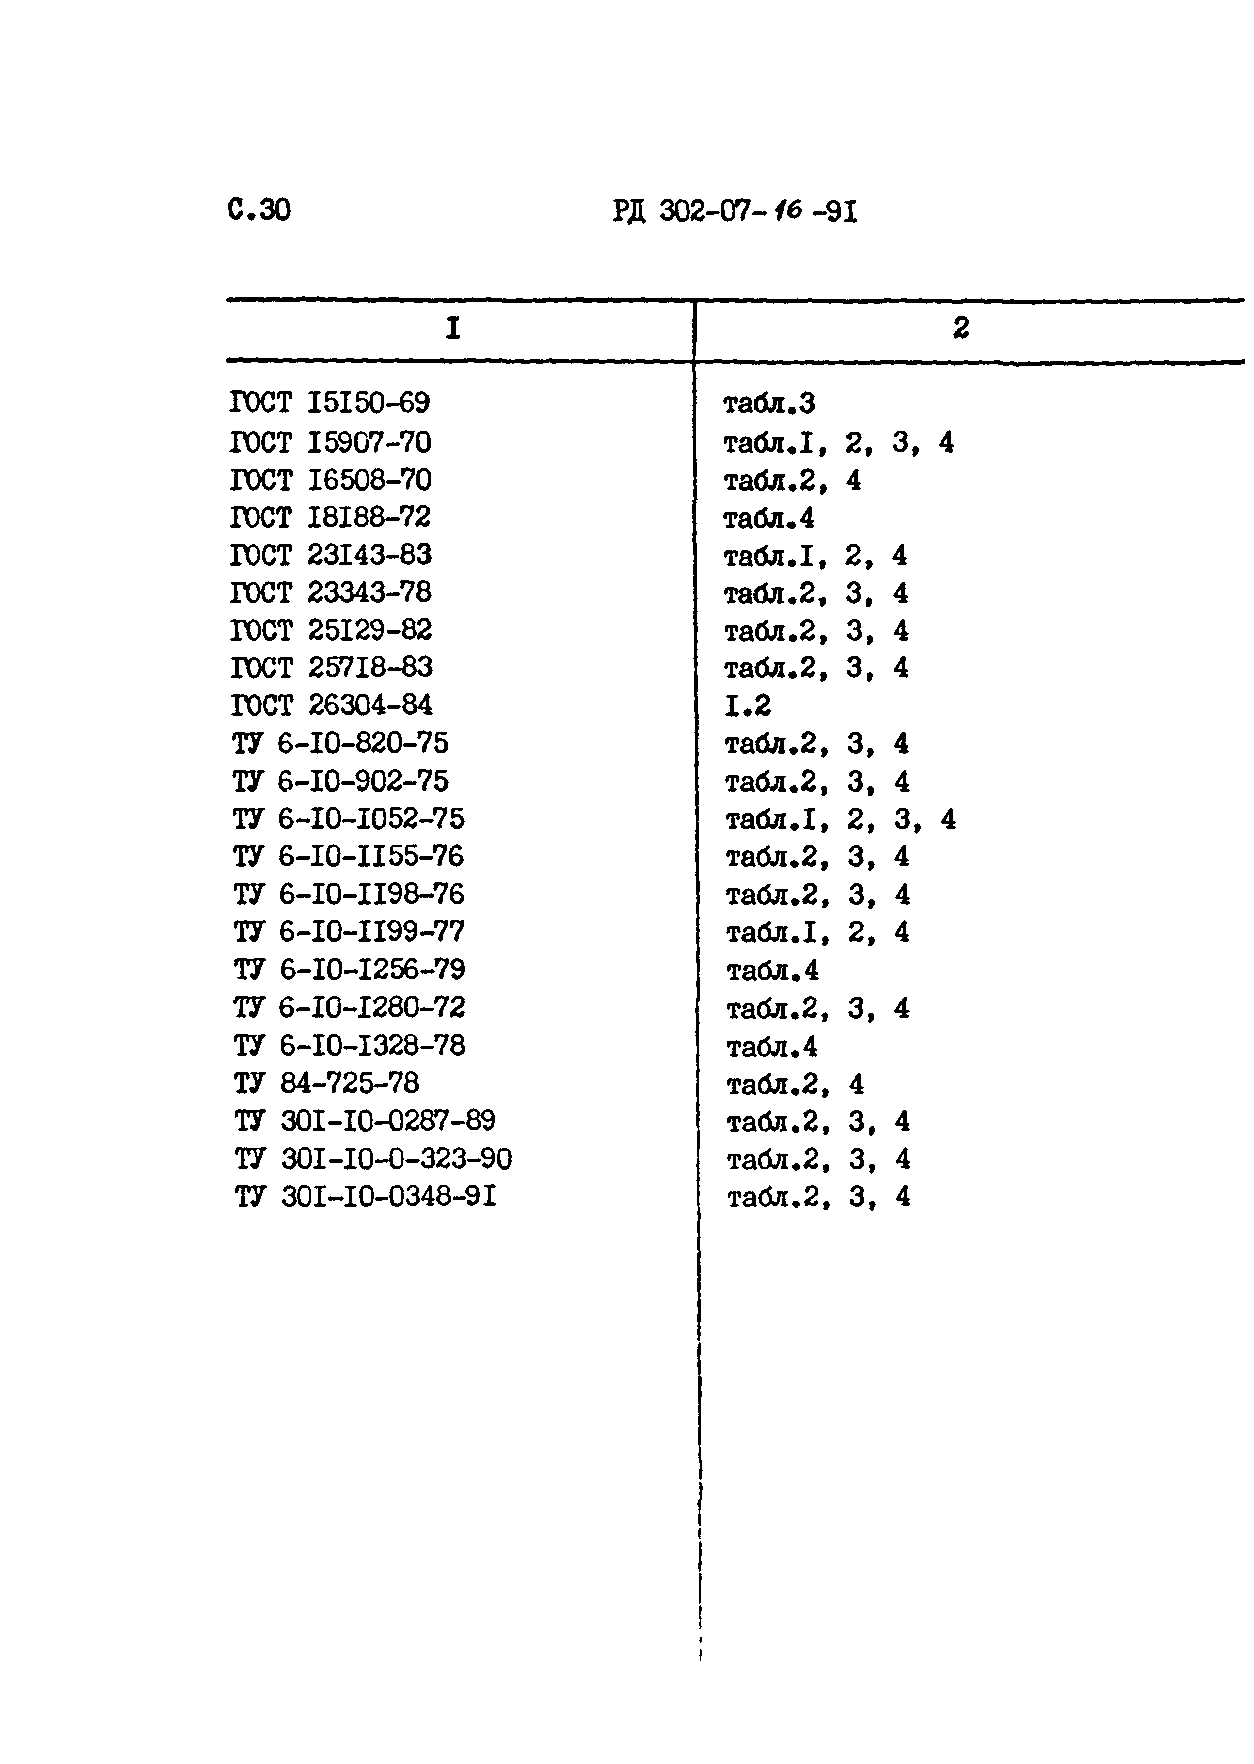 РД 302-07-16-91